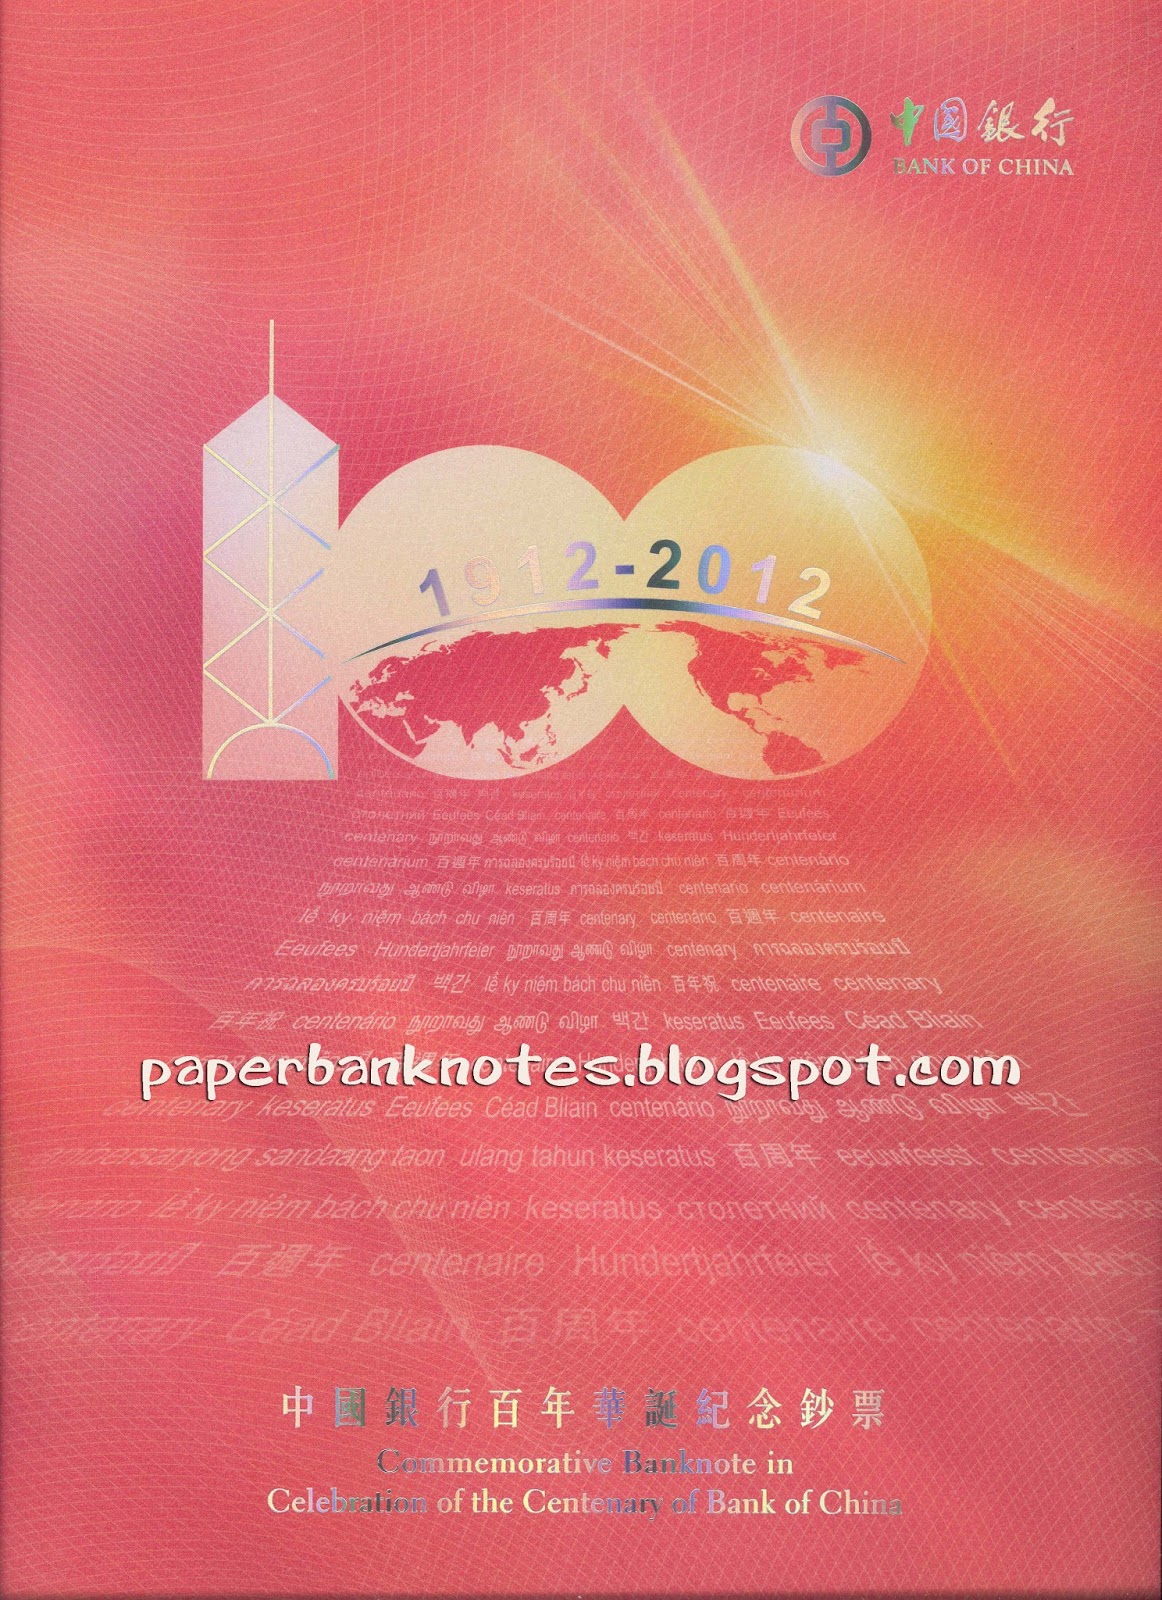 http://eastasiabanknotes.blogspot.com/2014/05/hong-kong-bank-of-china-100-3-in-1.html